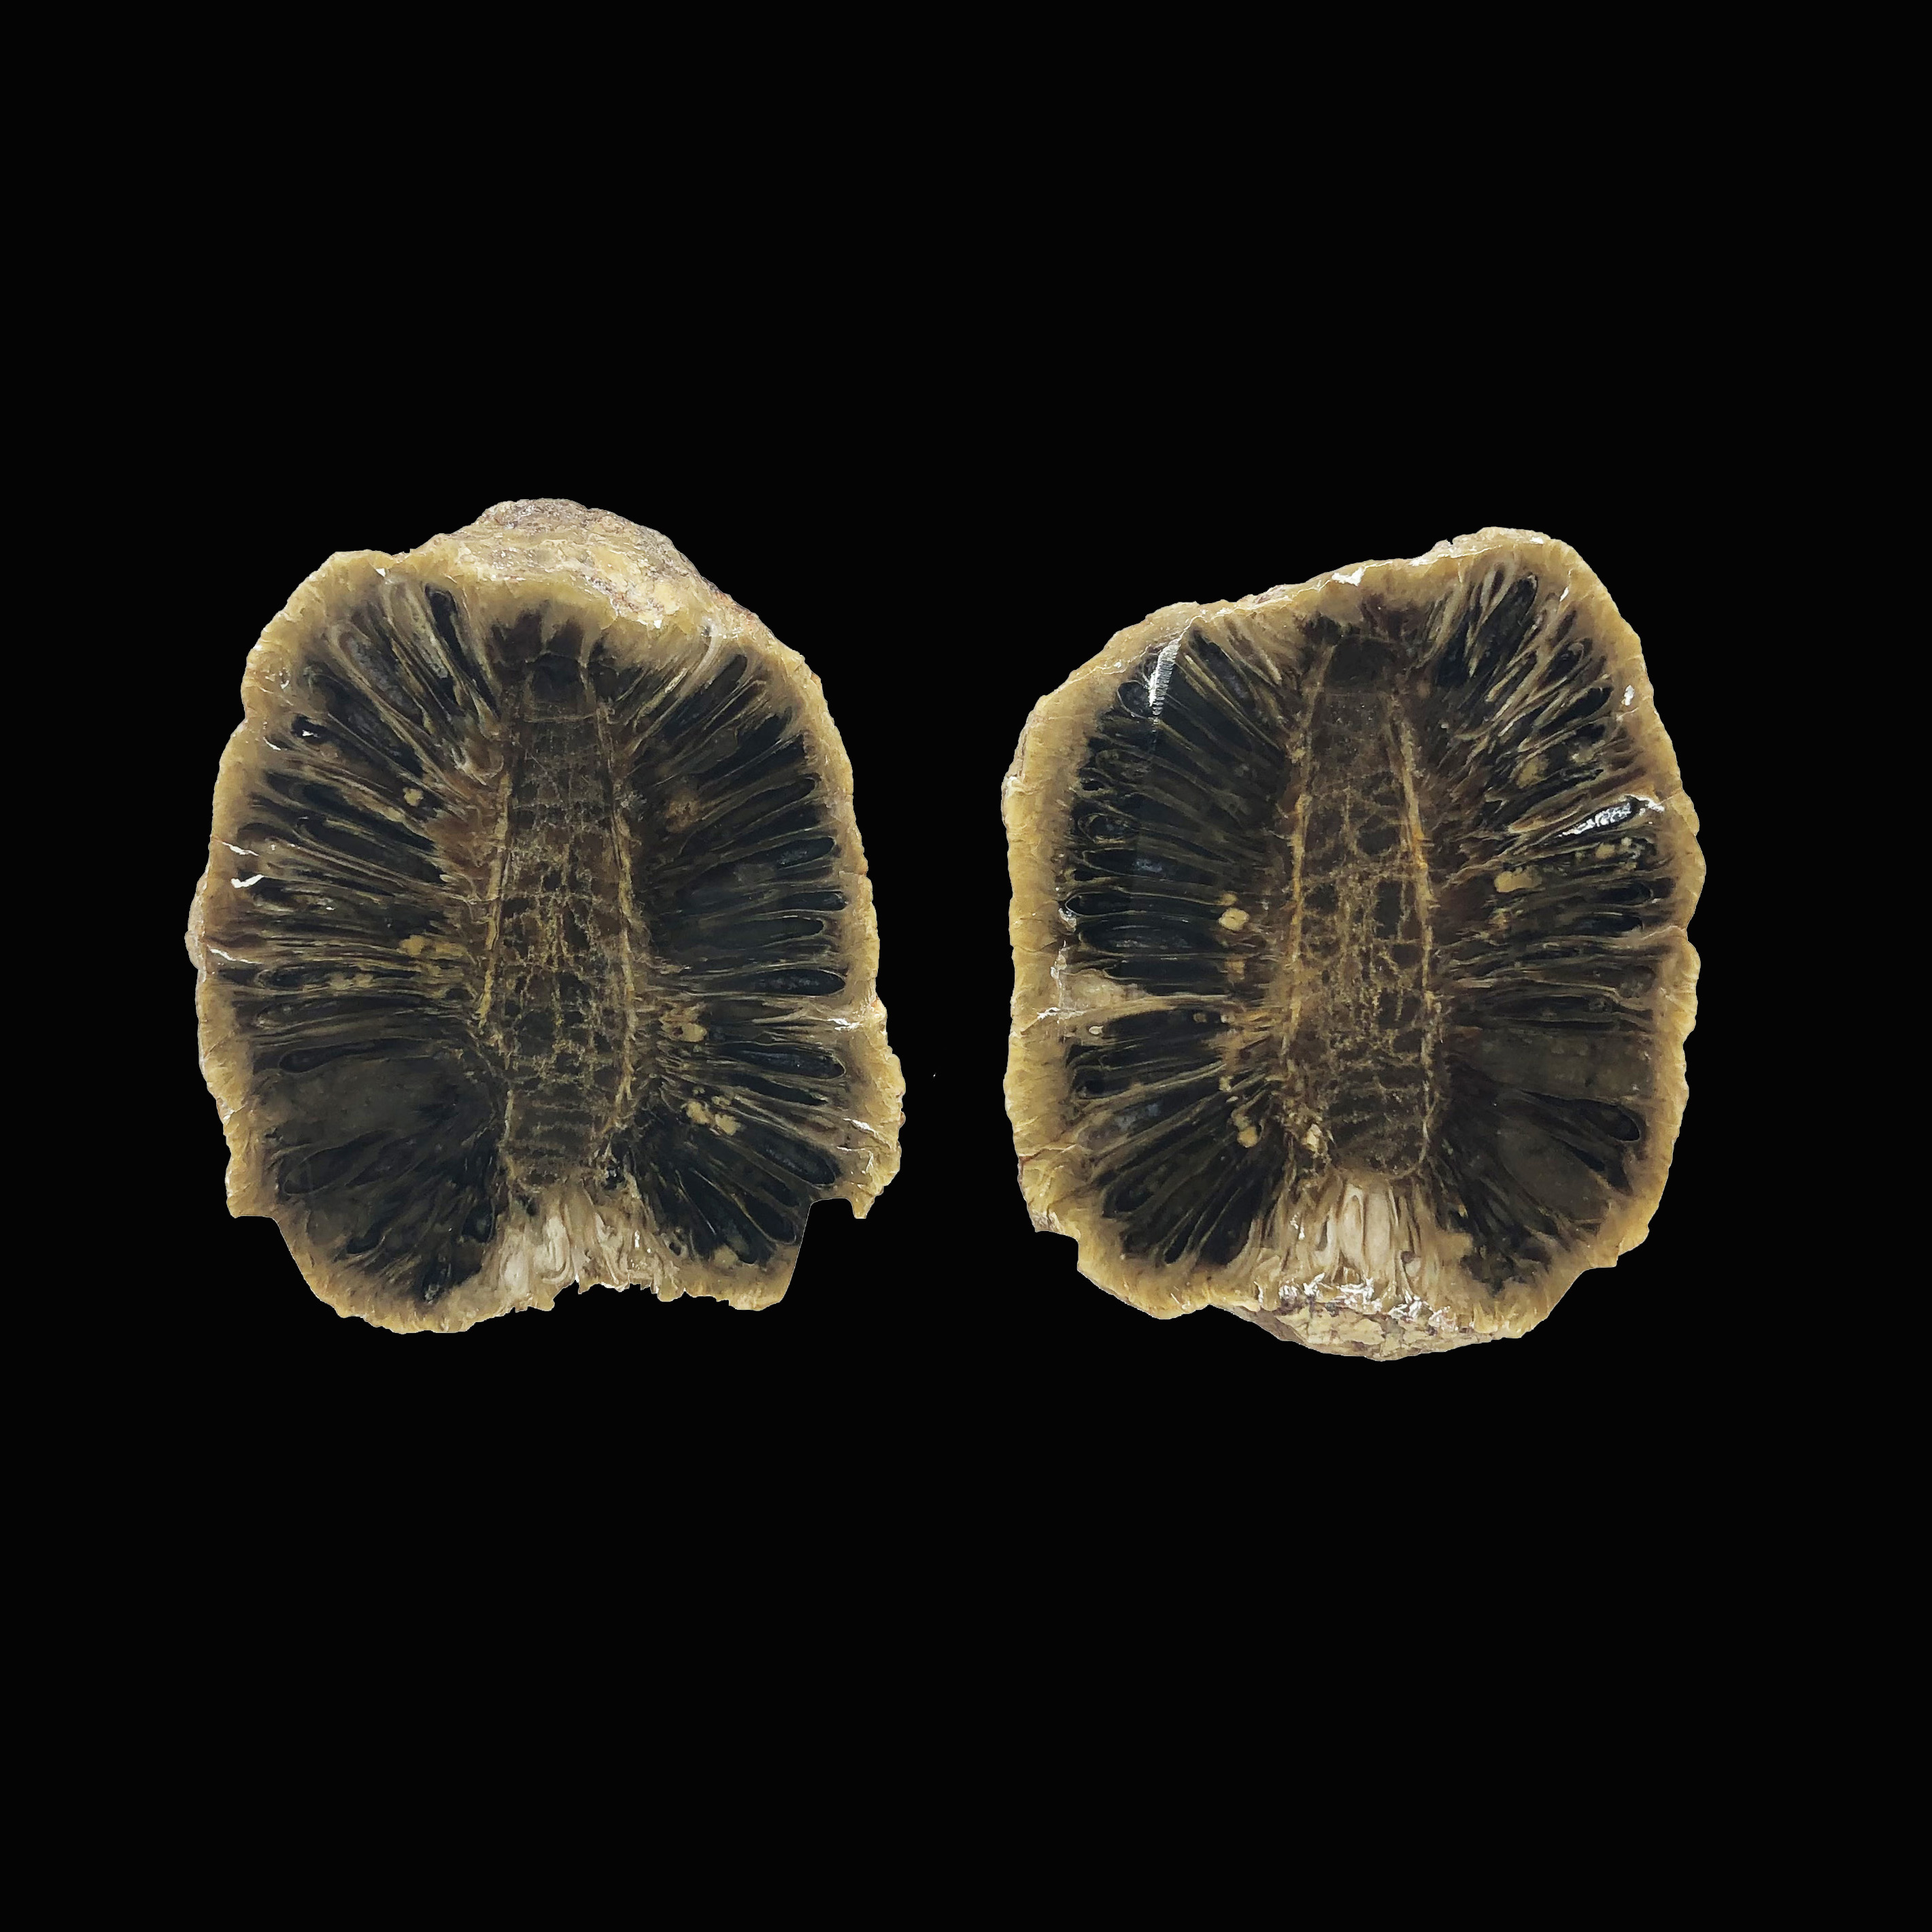 圖示-松果化石(Equicalastrobus Chinleana)